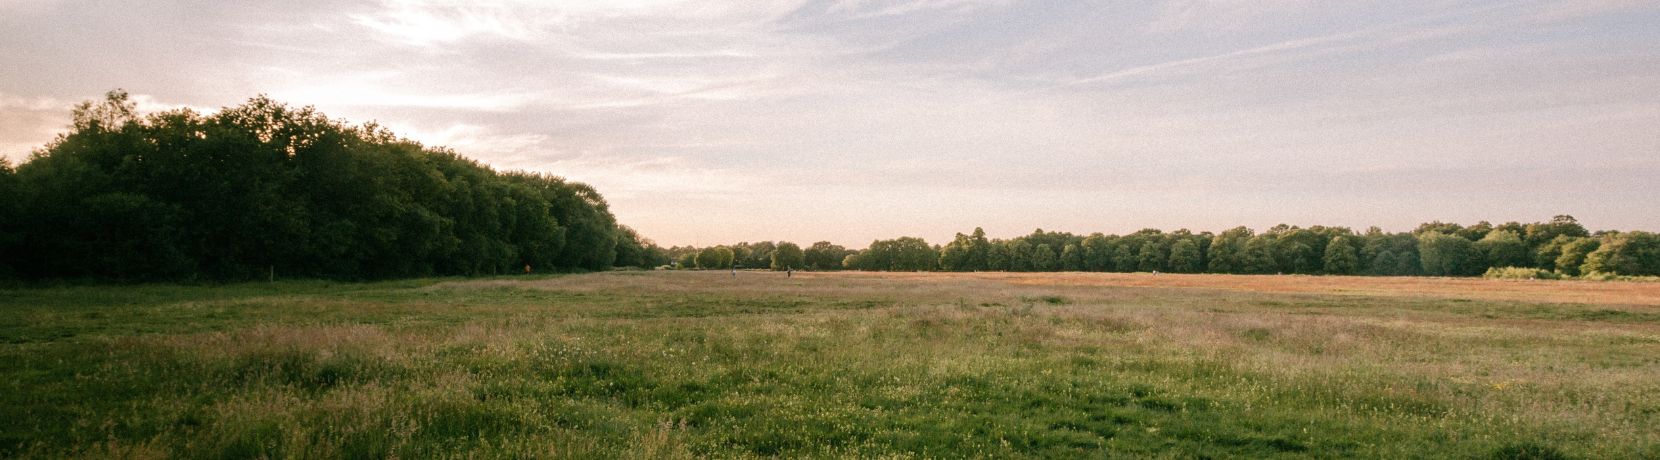 Evening shot of a green field